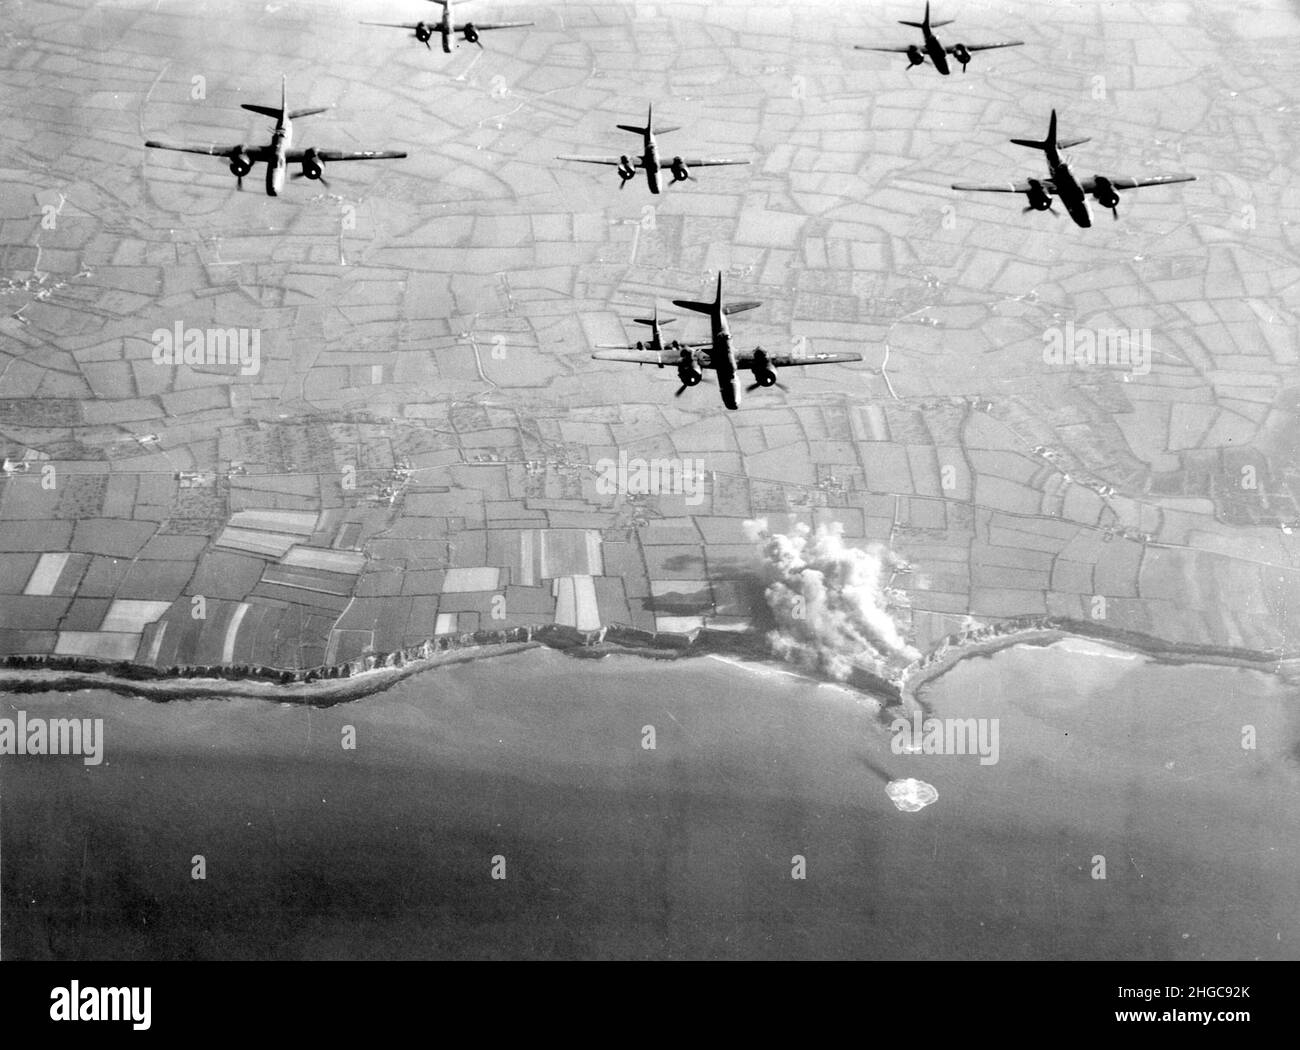 A-20 i bombardieri dell'Havoc dall'Aeronautica militare del 9th bombardano Pointe du Hoc prima degli sbarchi del D-Day. Il fumo è visibile dalle fortificazioni sulle scogliere. La spiaggia di Omaha si trova al centro della foto, a sinistra di Pointe du Hoc Foto Stock